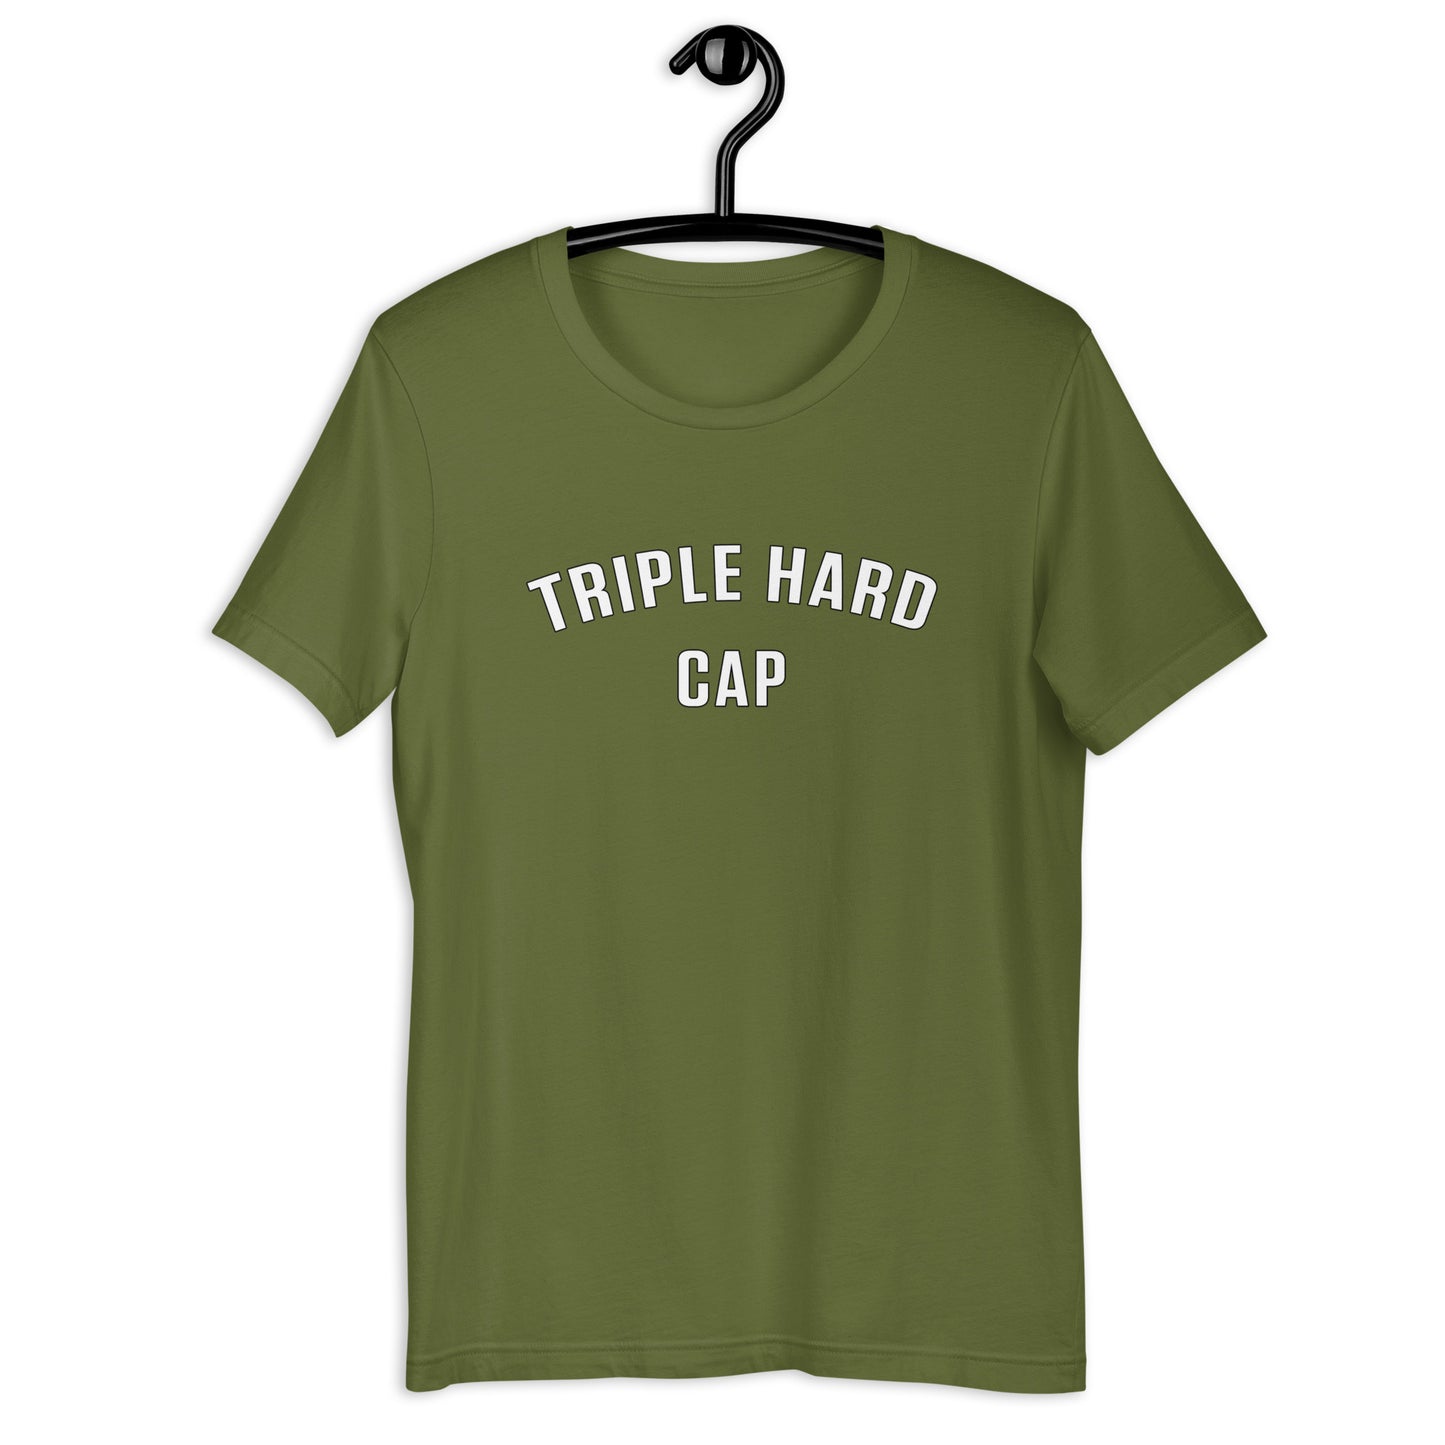 Agent Provocateur "Triple Hard Cap" T-Shirt